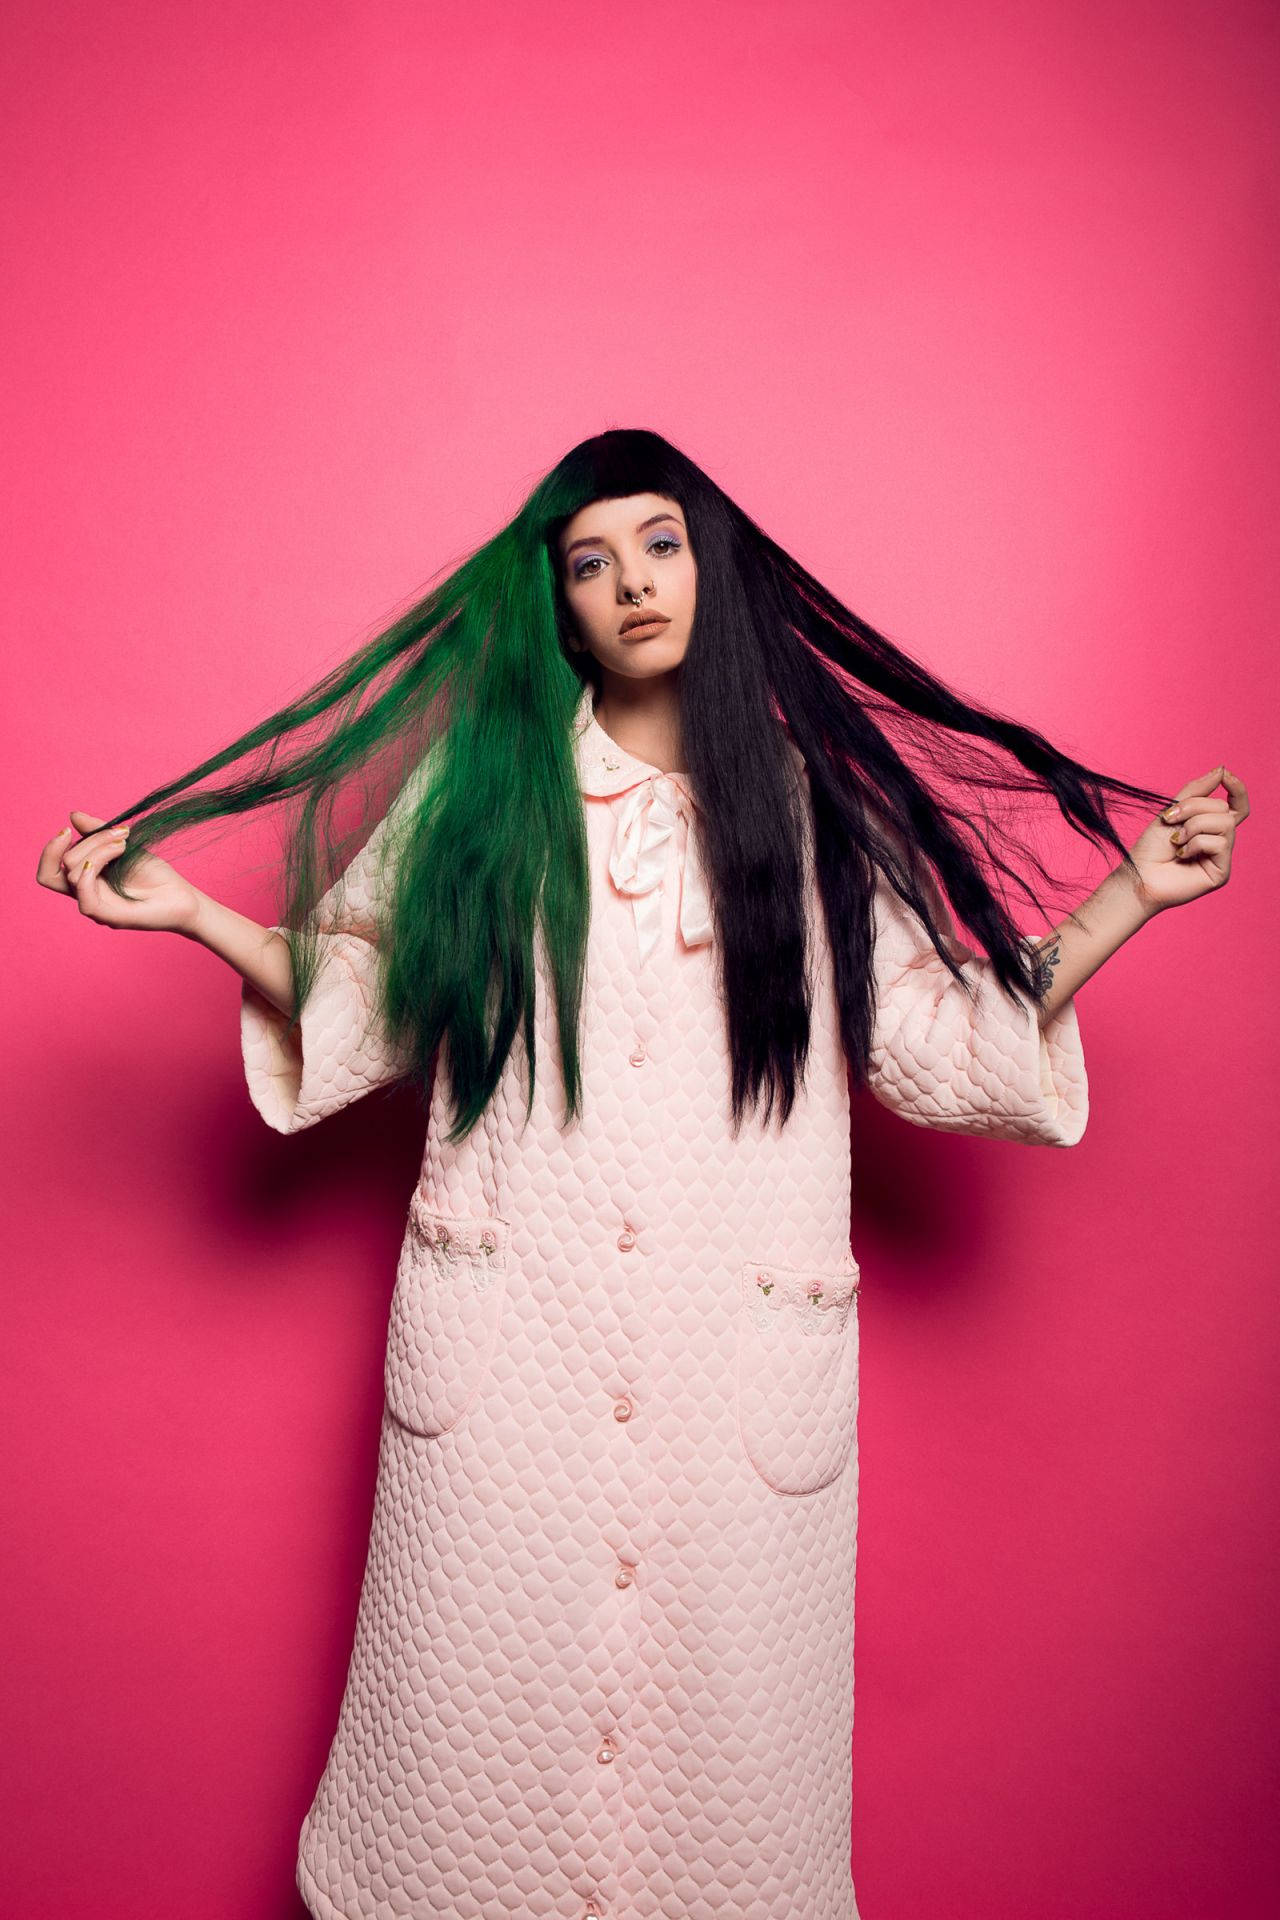 Melanie Martinez Green Hair Background